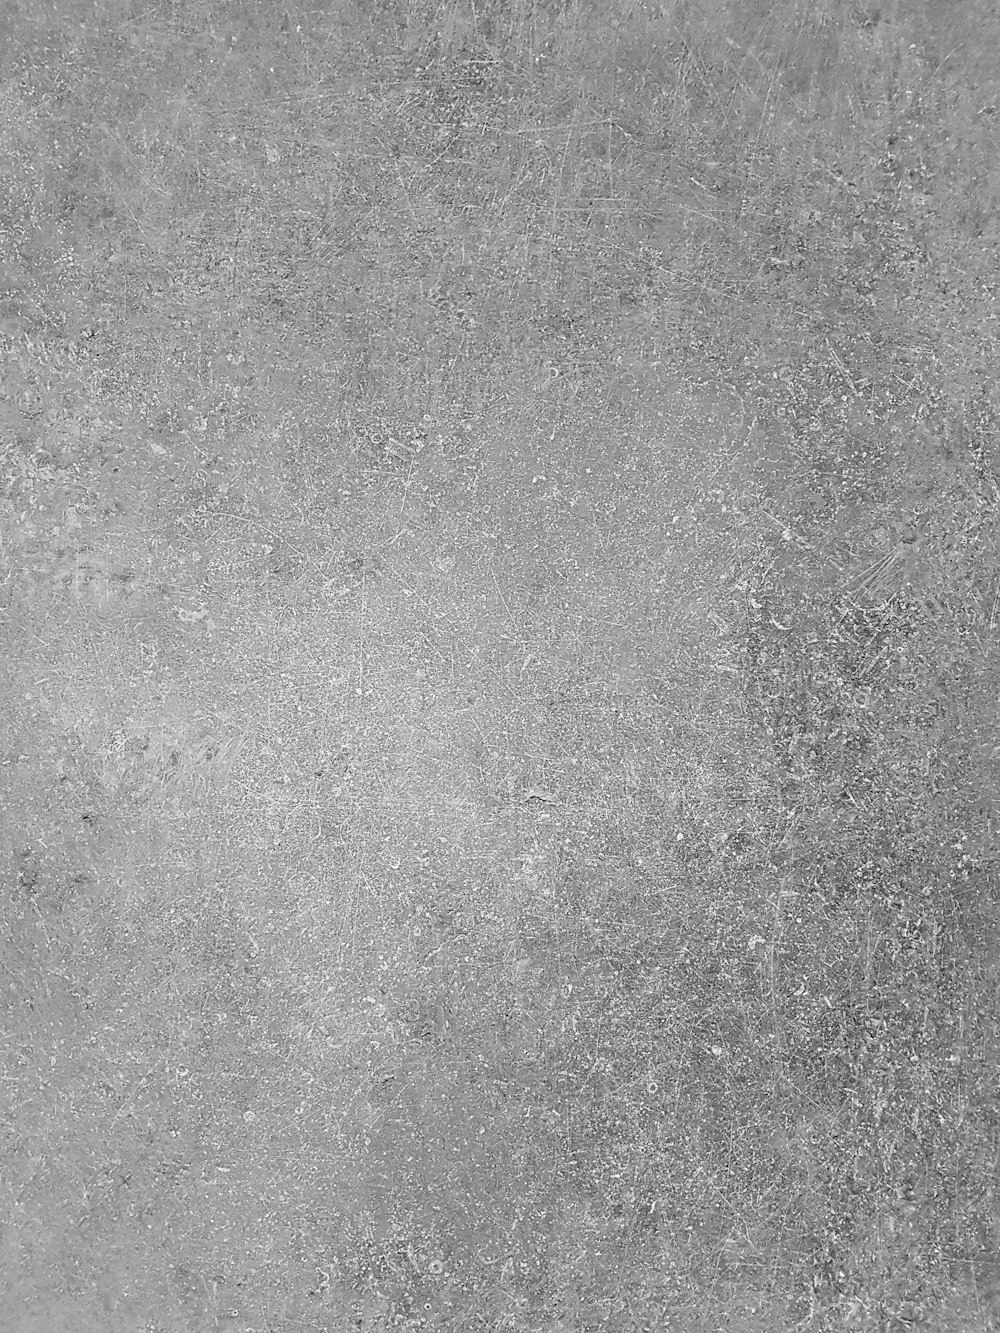 Una foto in bianco e nero di un muro di cemento